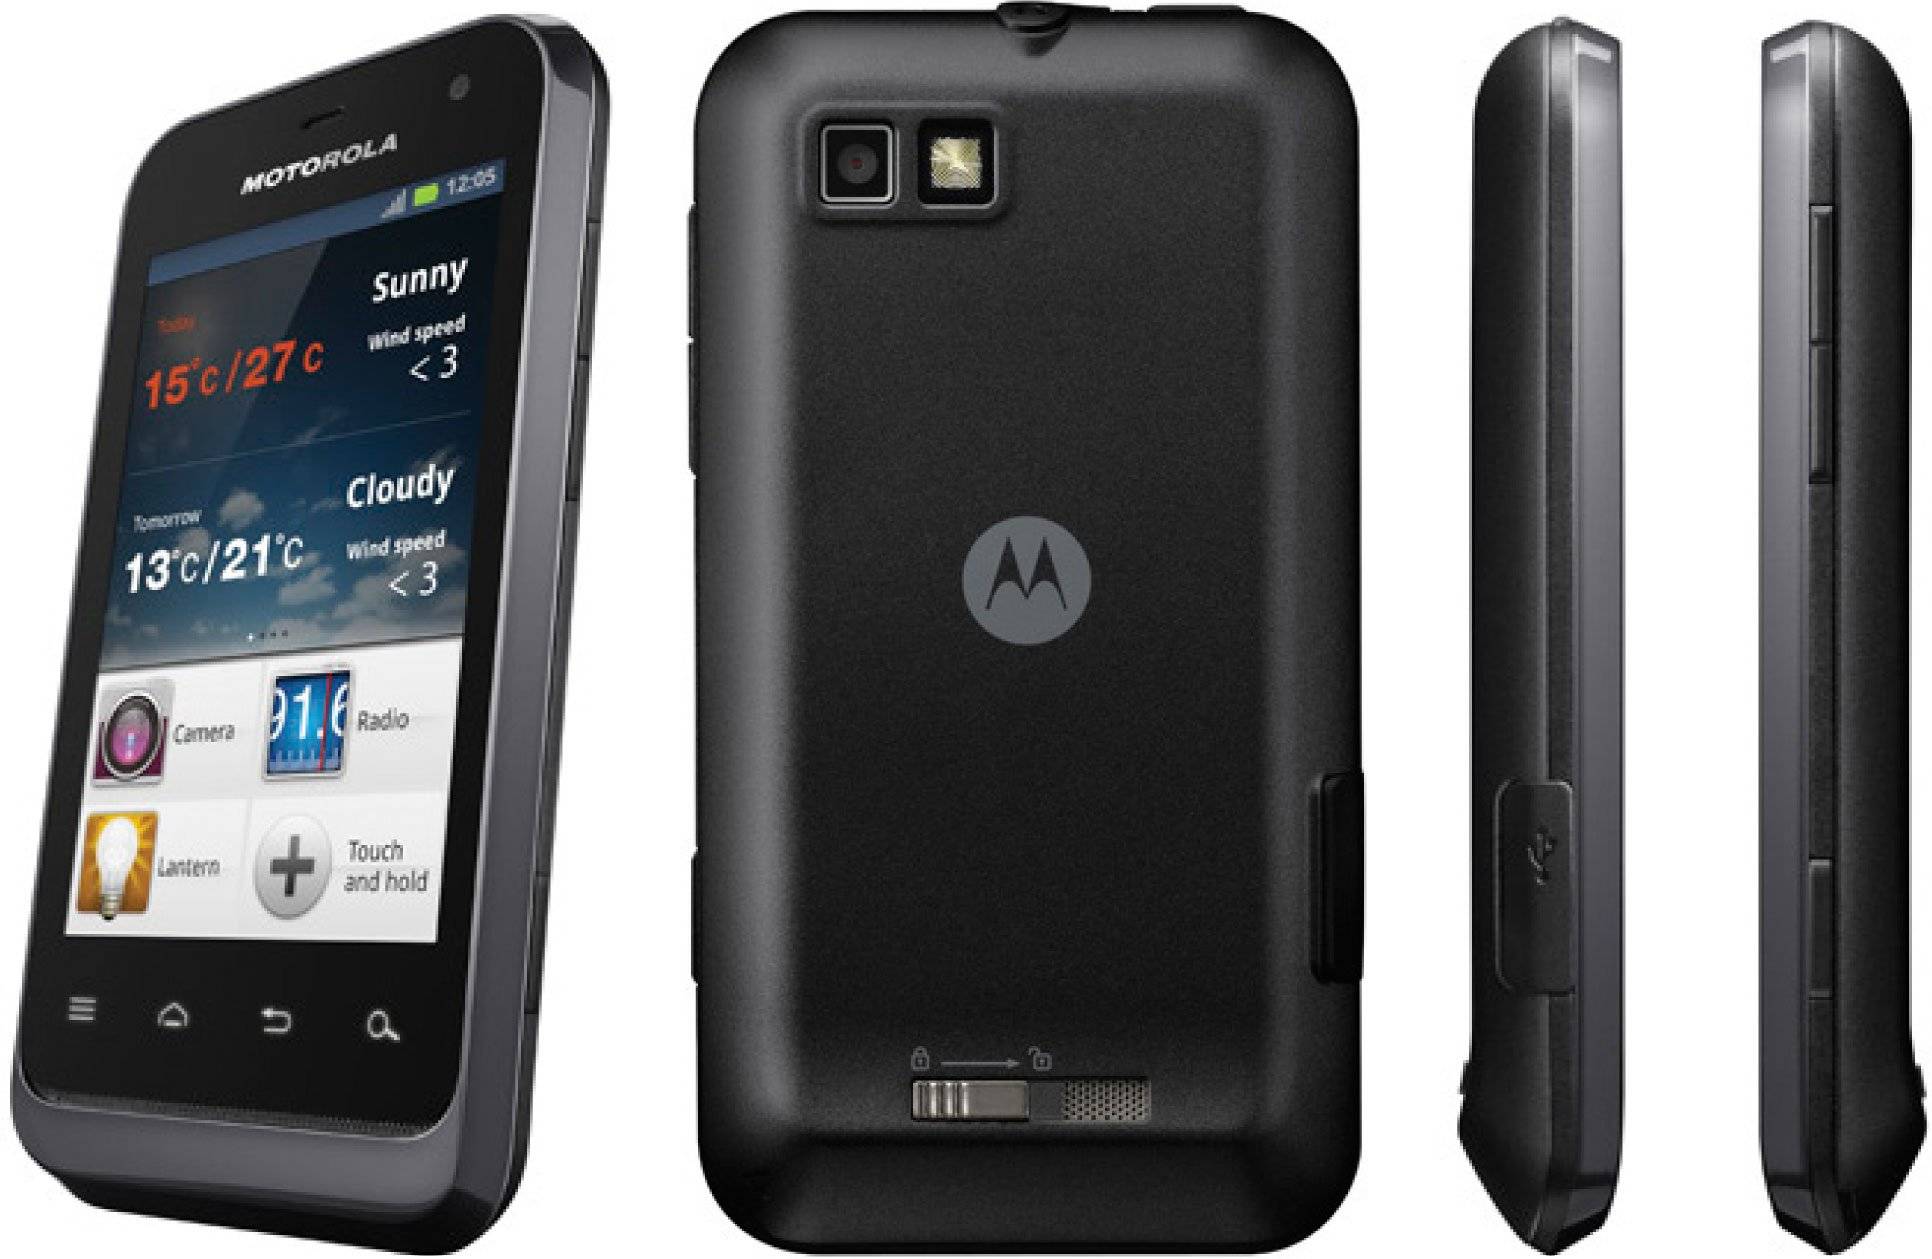 Motorola DEFY 846 - Dopo la “Concubina” di Motorola, perché il cellulare a tre prove è gradualmente scomparso?